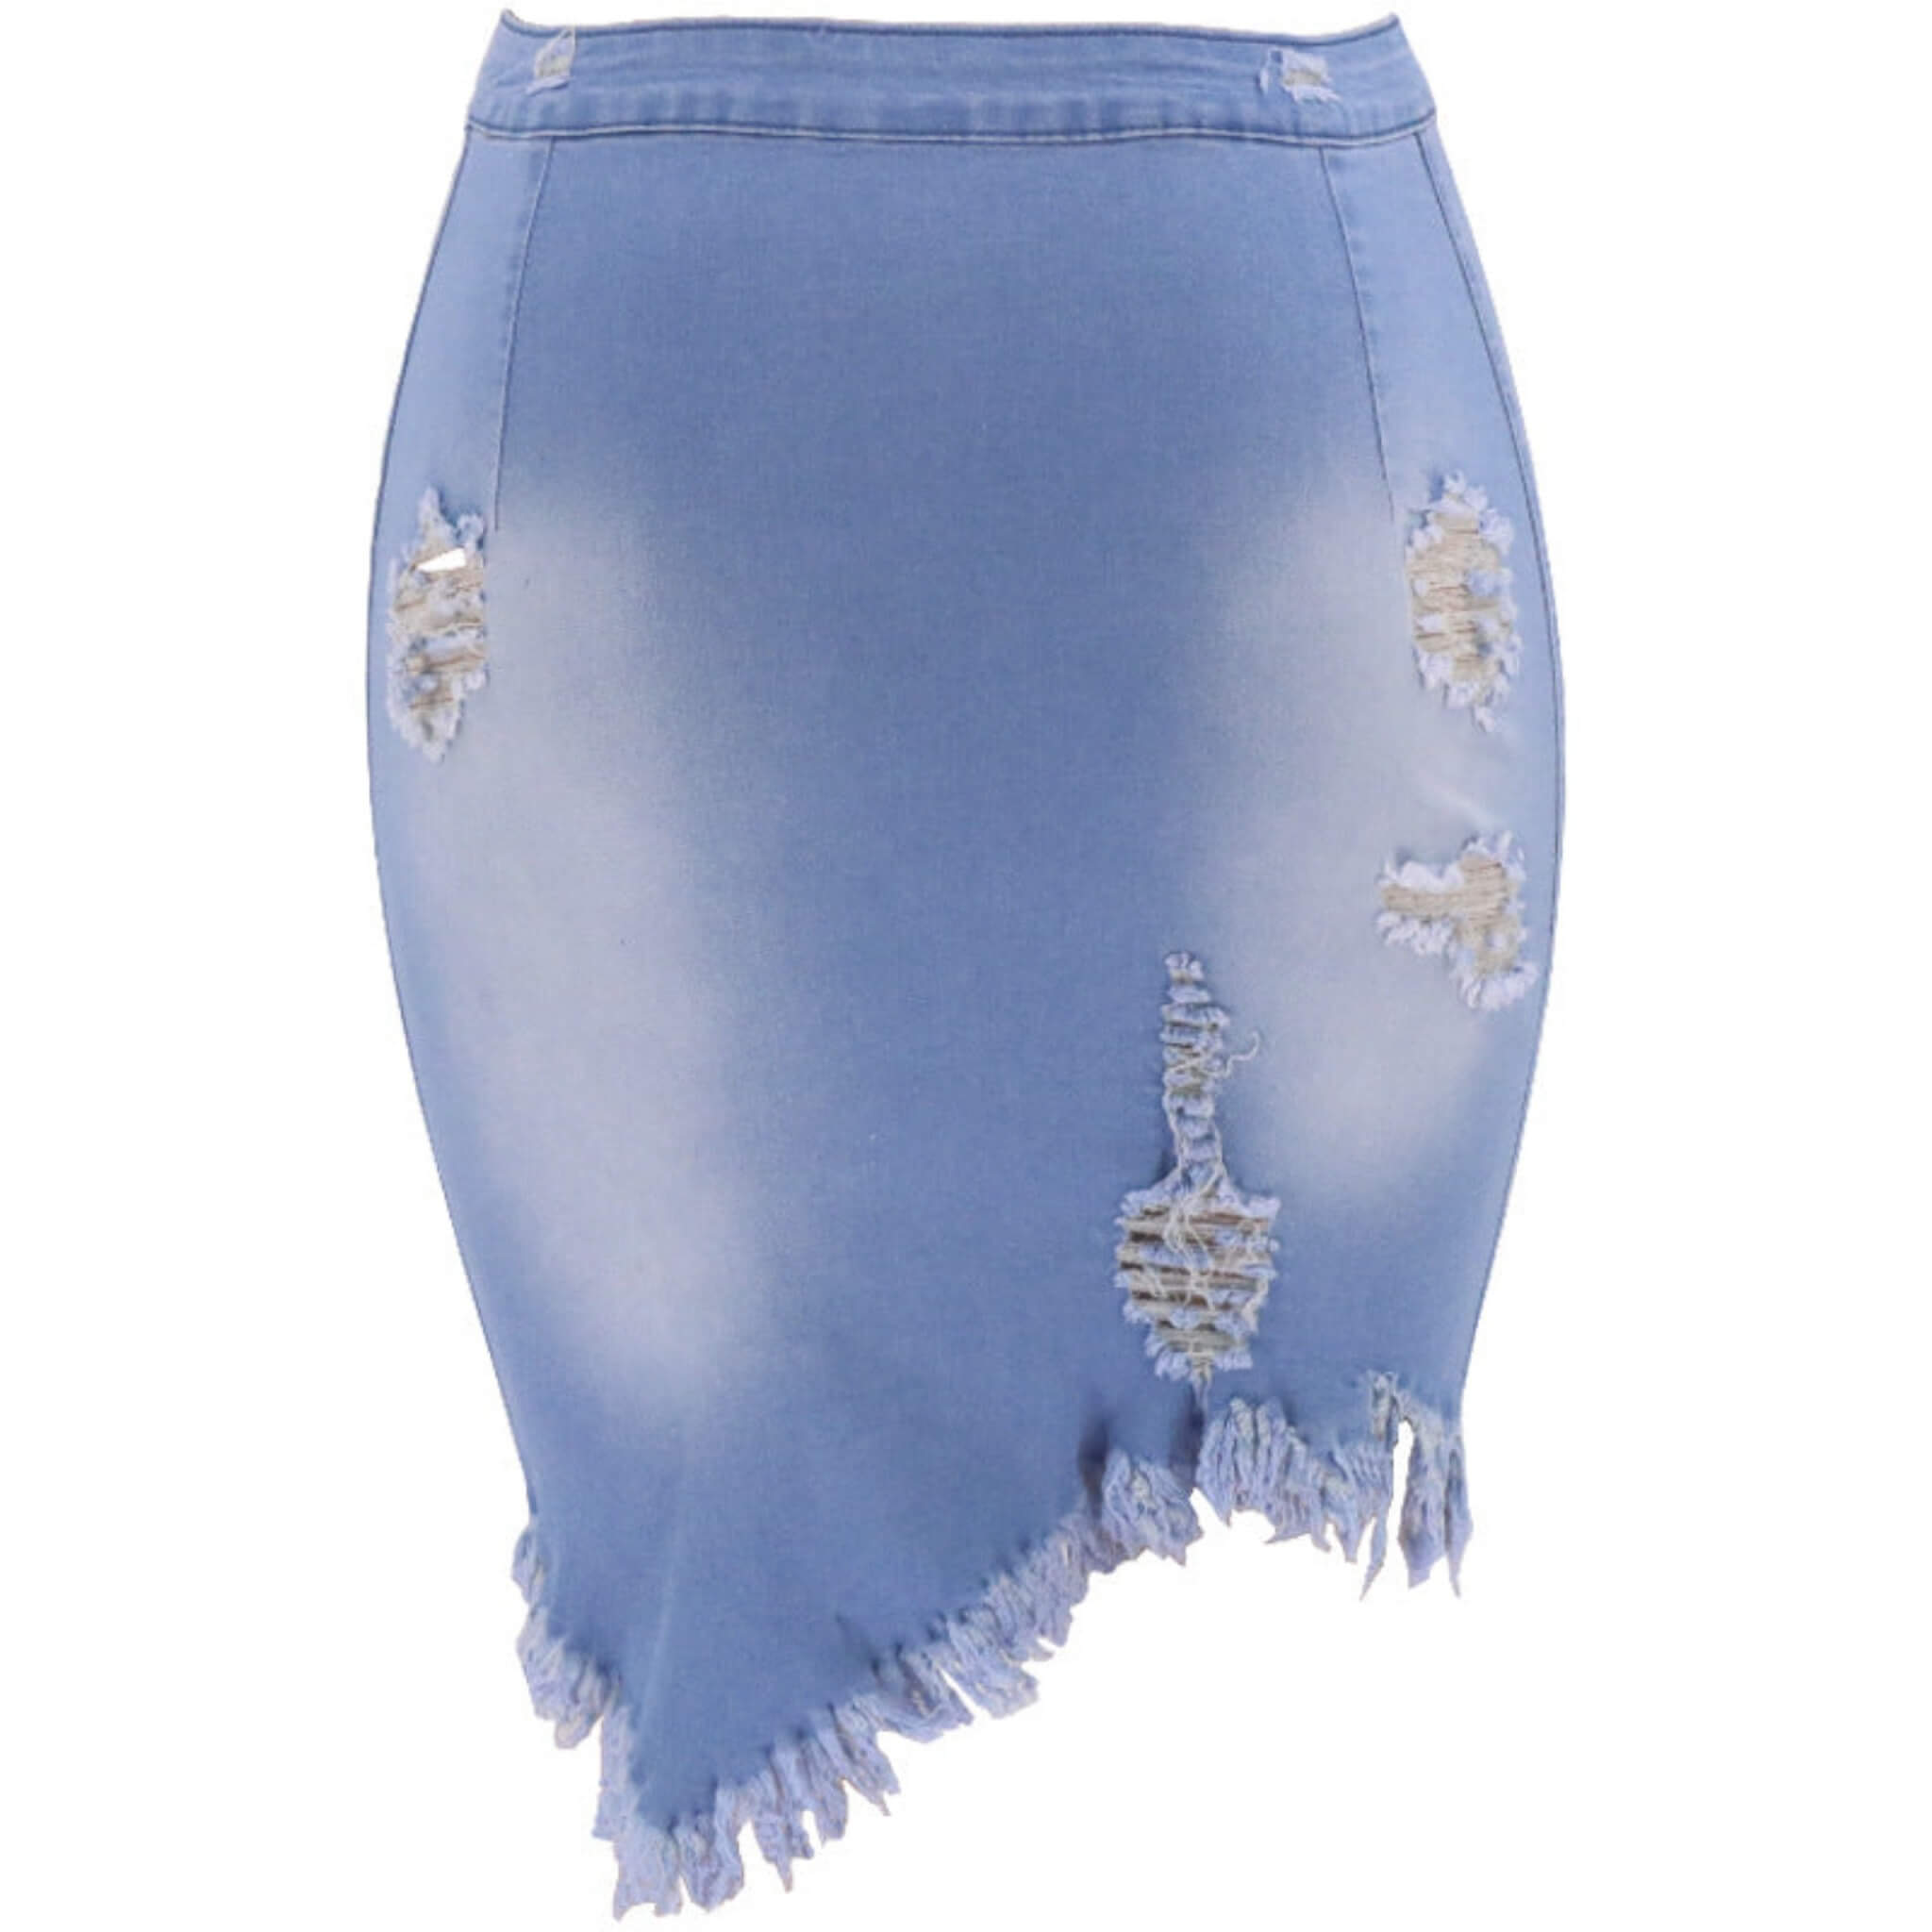 Women's Distressed Bodycon Denim Skirt  UponBasics Light Blue S 